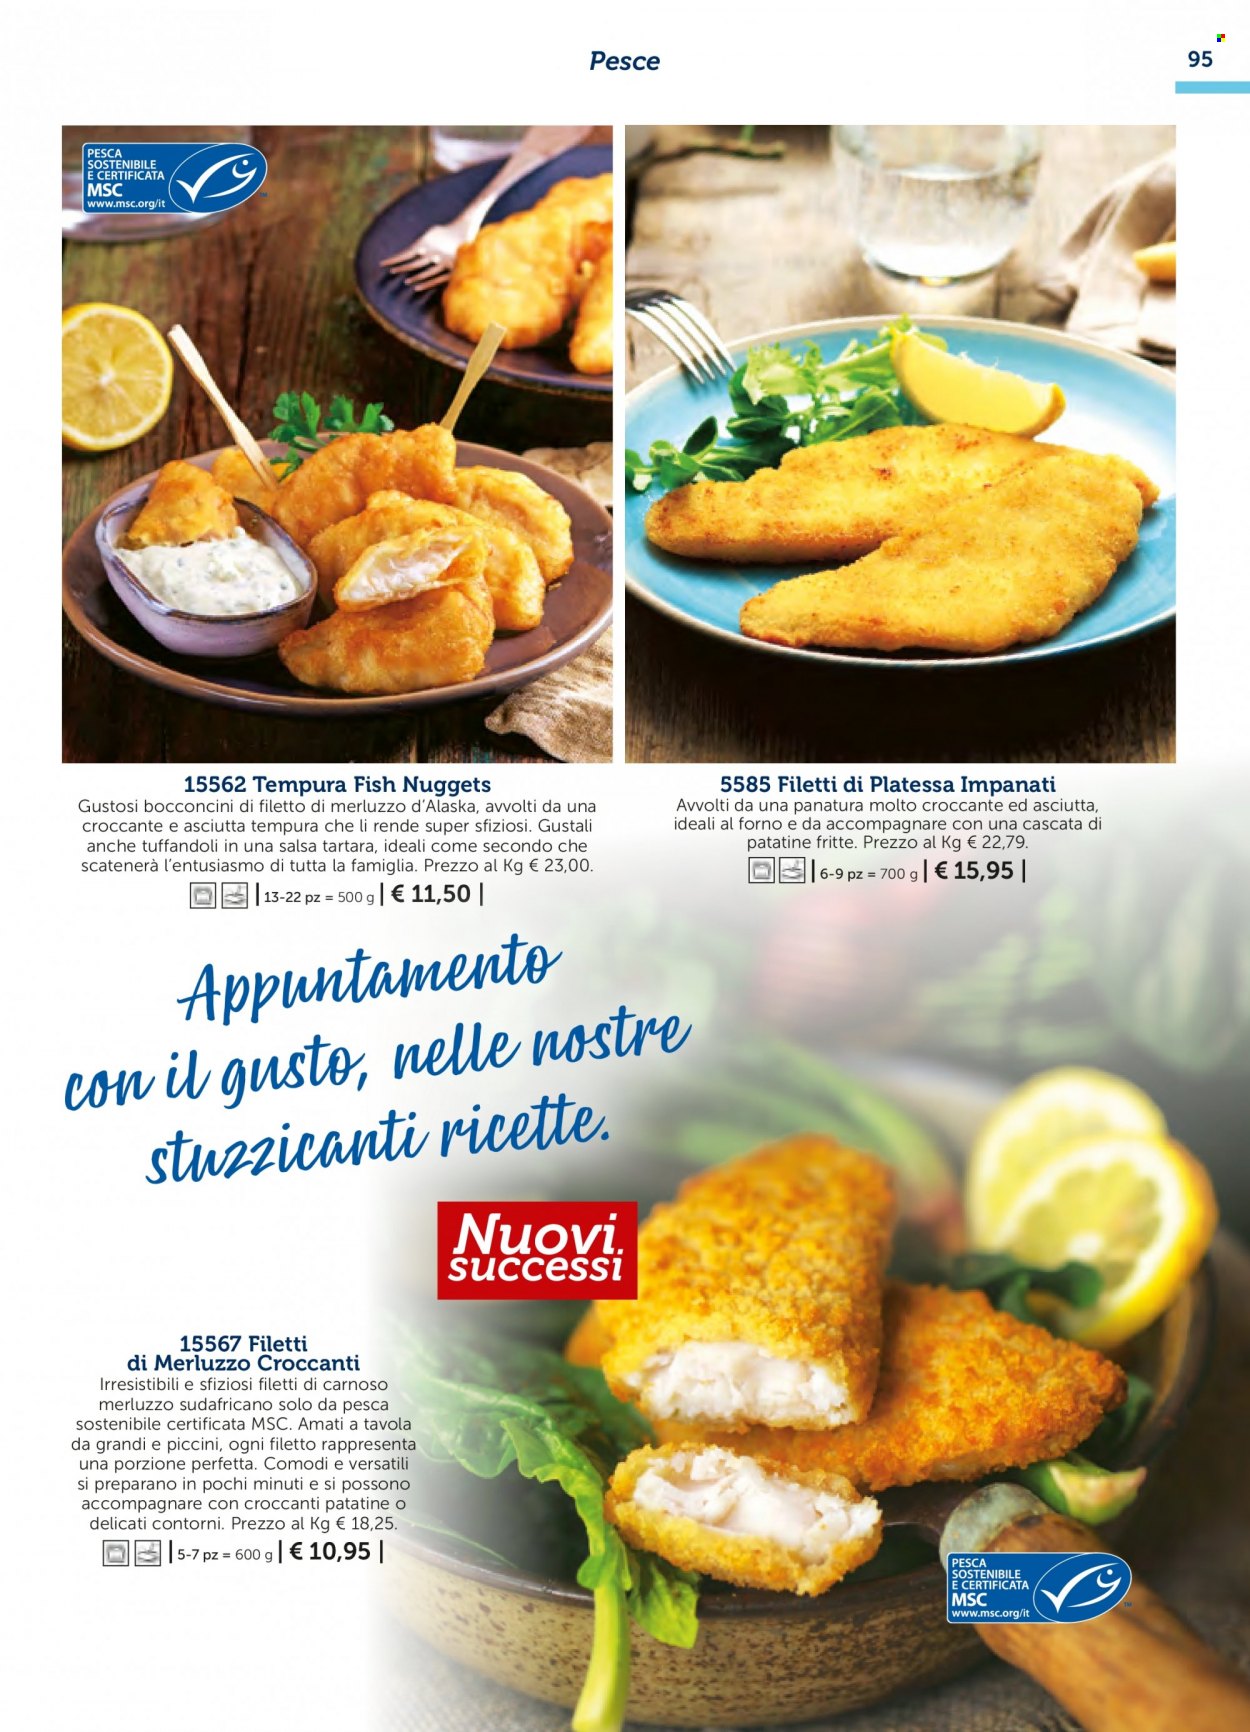 thumbnail - Volantino Bofrost - Prodotti in offerta - filetti di merluzzo, filetti di platessa, pesce, merluzzo, platessa, filetti di platessa impanati, nuggets, patatine. Pagina 95.